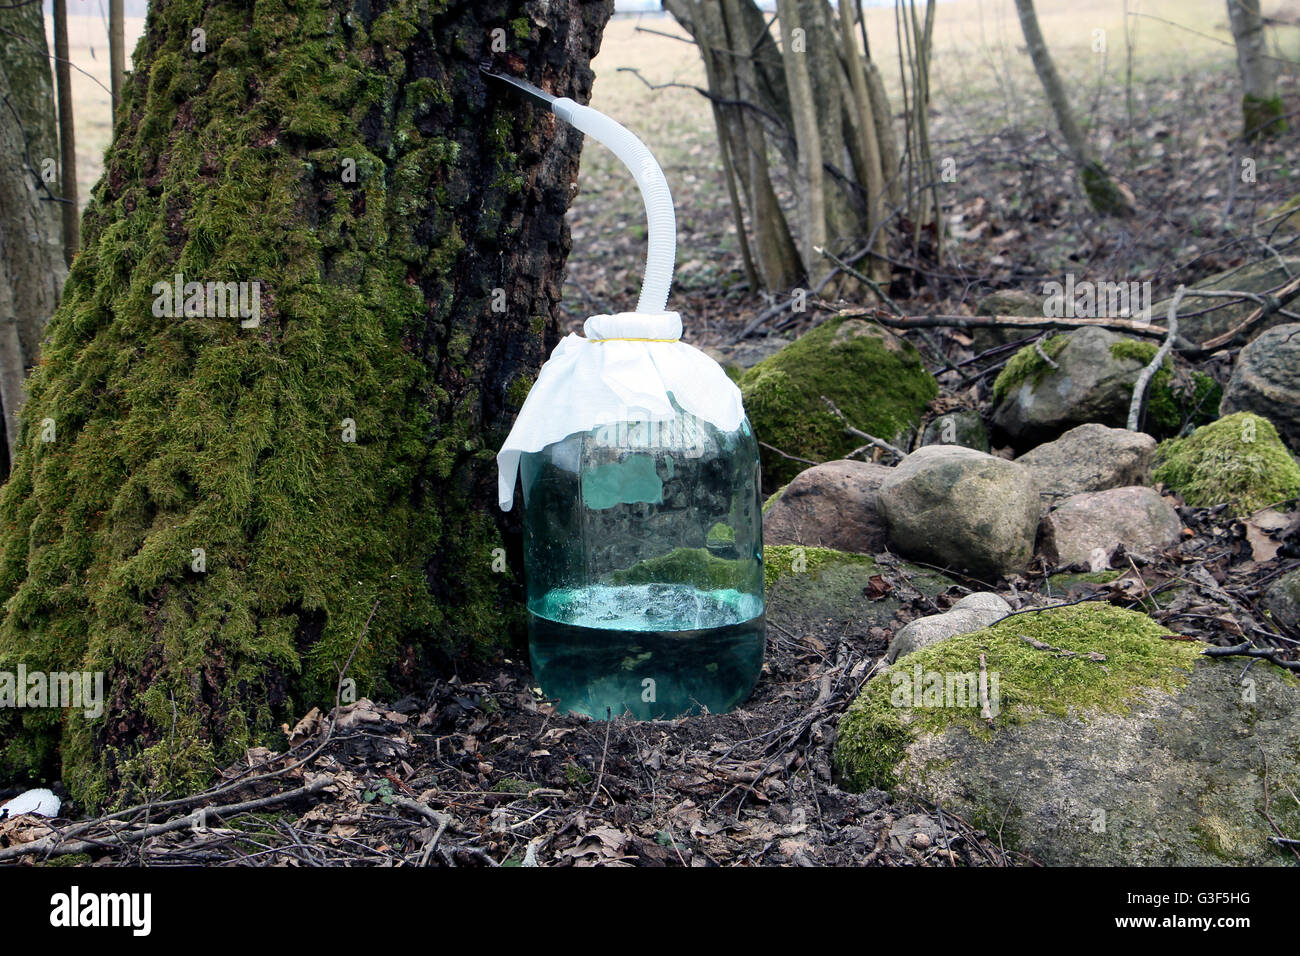 Tinaja de savia de abedul cerca de moss crecen árboles y piedras en el bosque Foto de stock